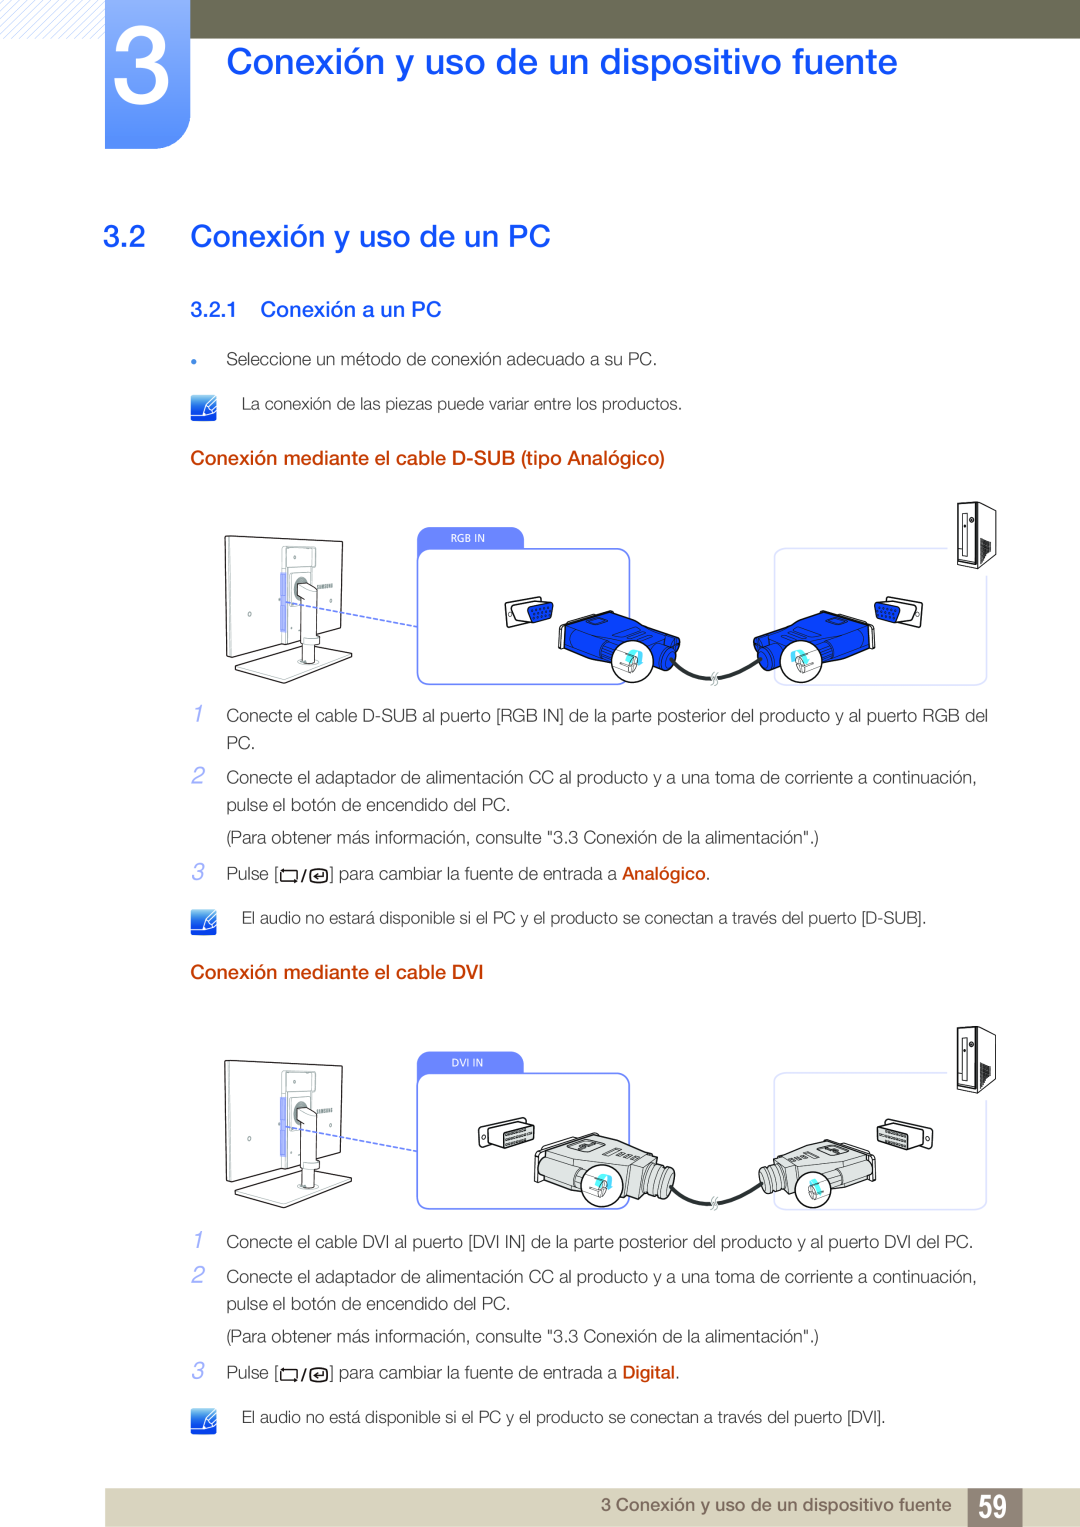 Samsung LF22TSCTBAN/EN, LF19TSCTBAN/EN Conexión y uso de un PC, Conexión a un PC, Conexión y uso de un dispositivo fuente 